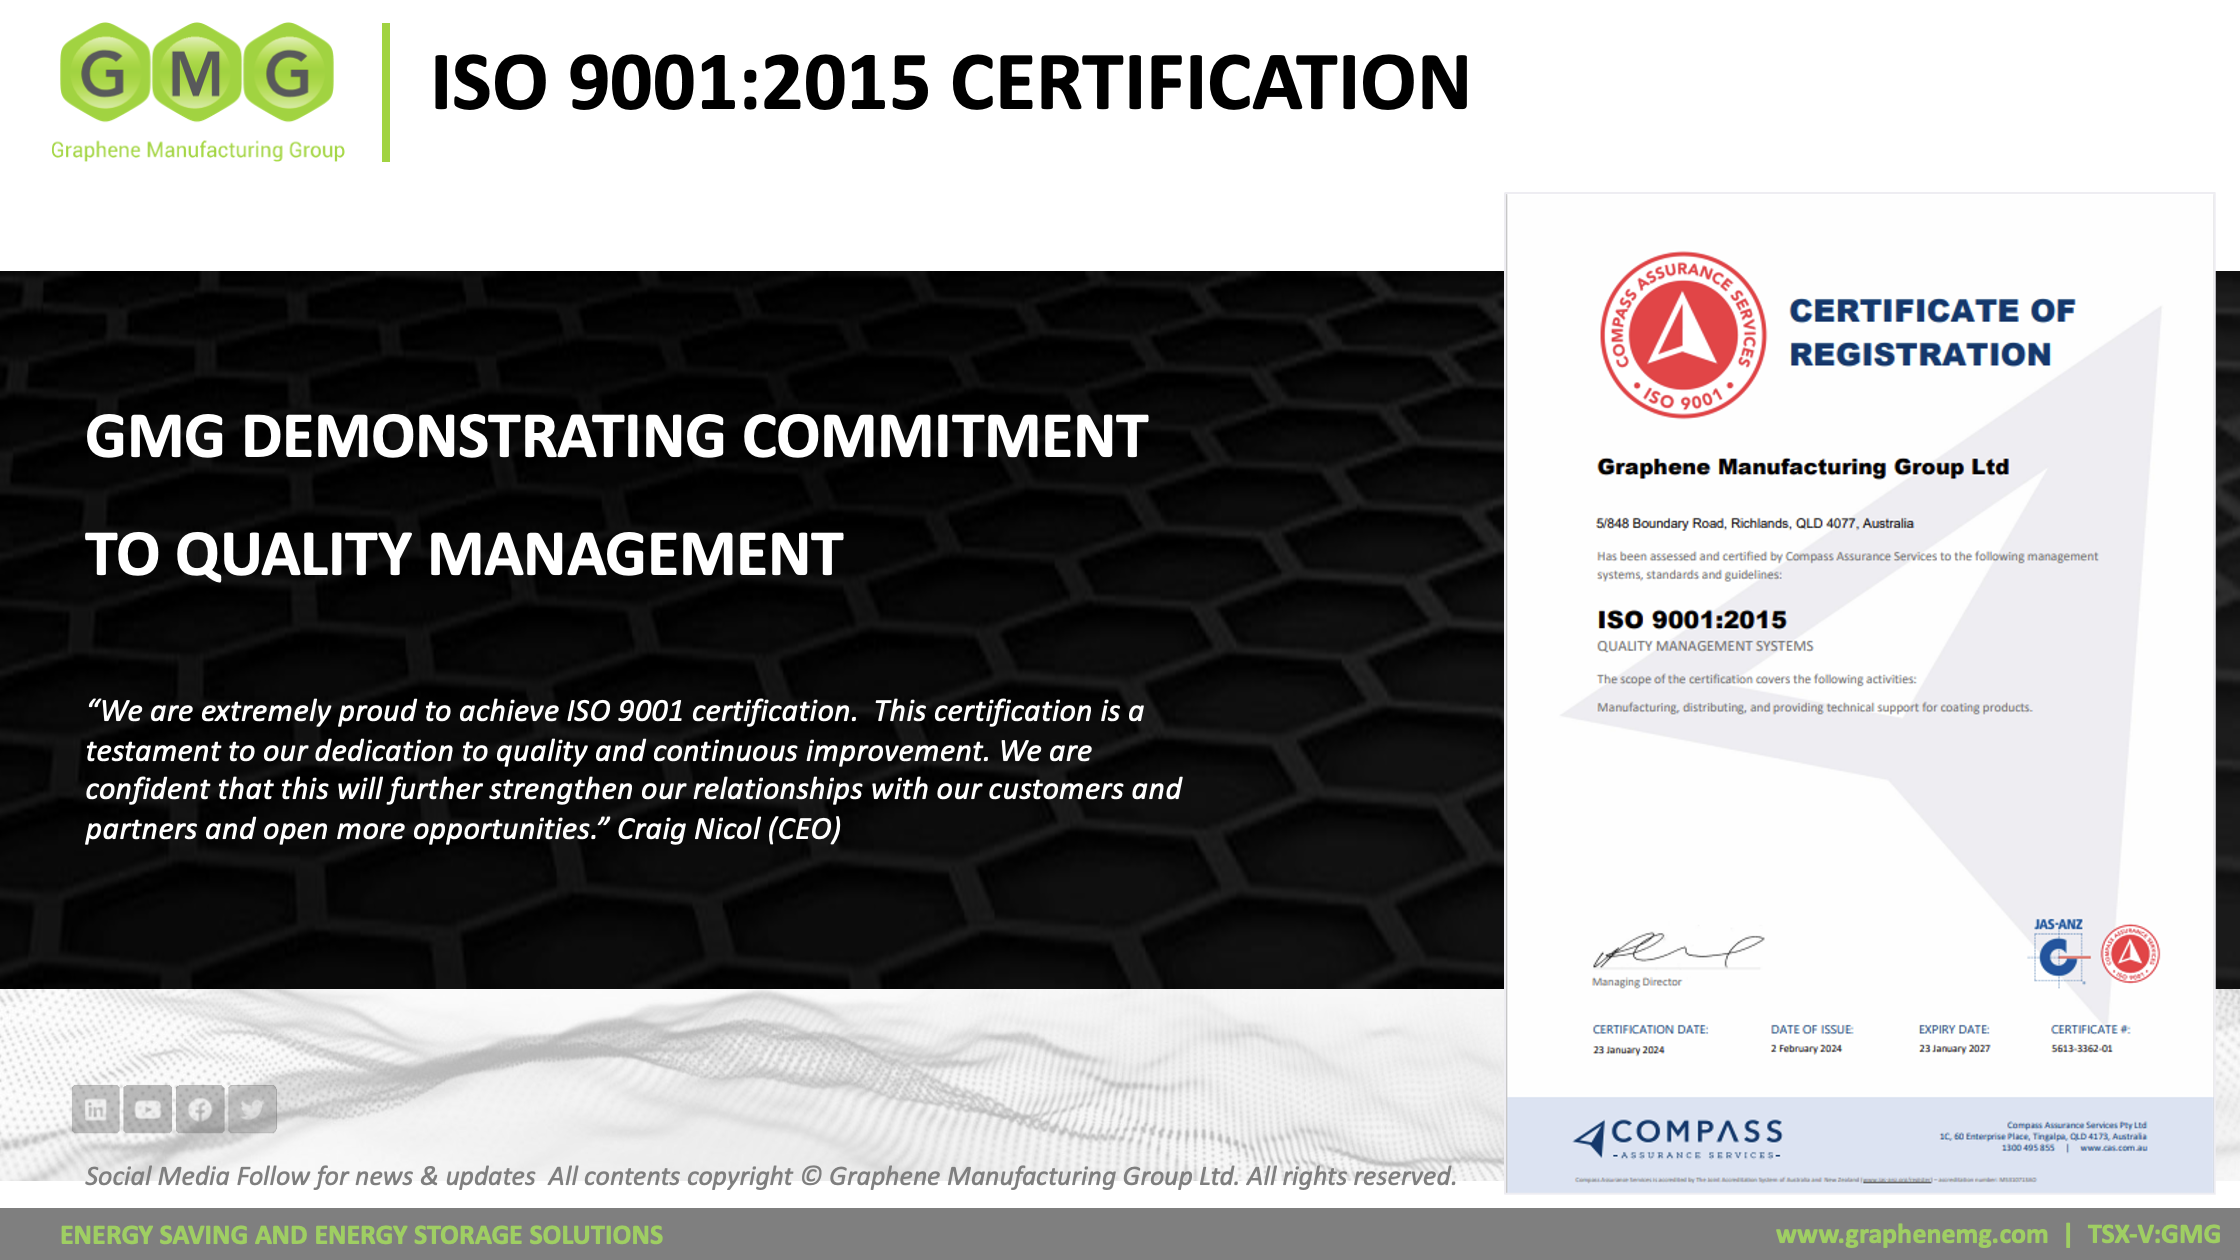 石墨烯制造集团获得 ISO 9001:2015 认证，展现对质量管理的承诺